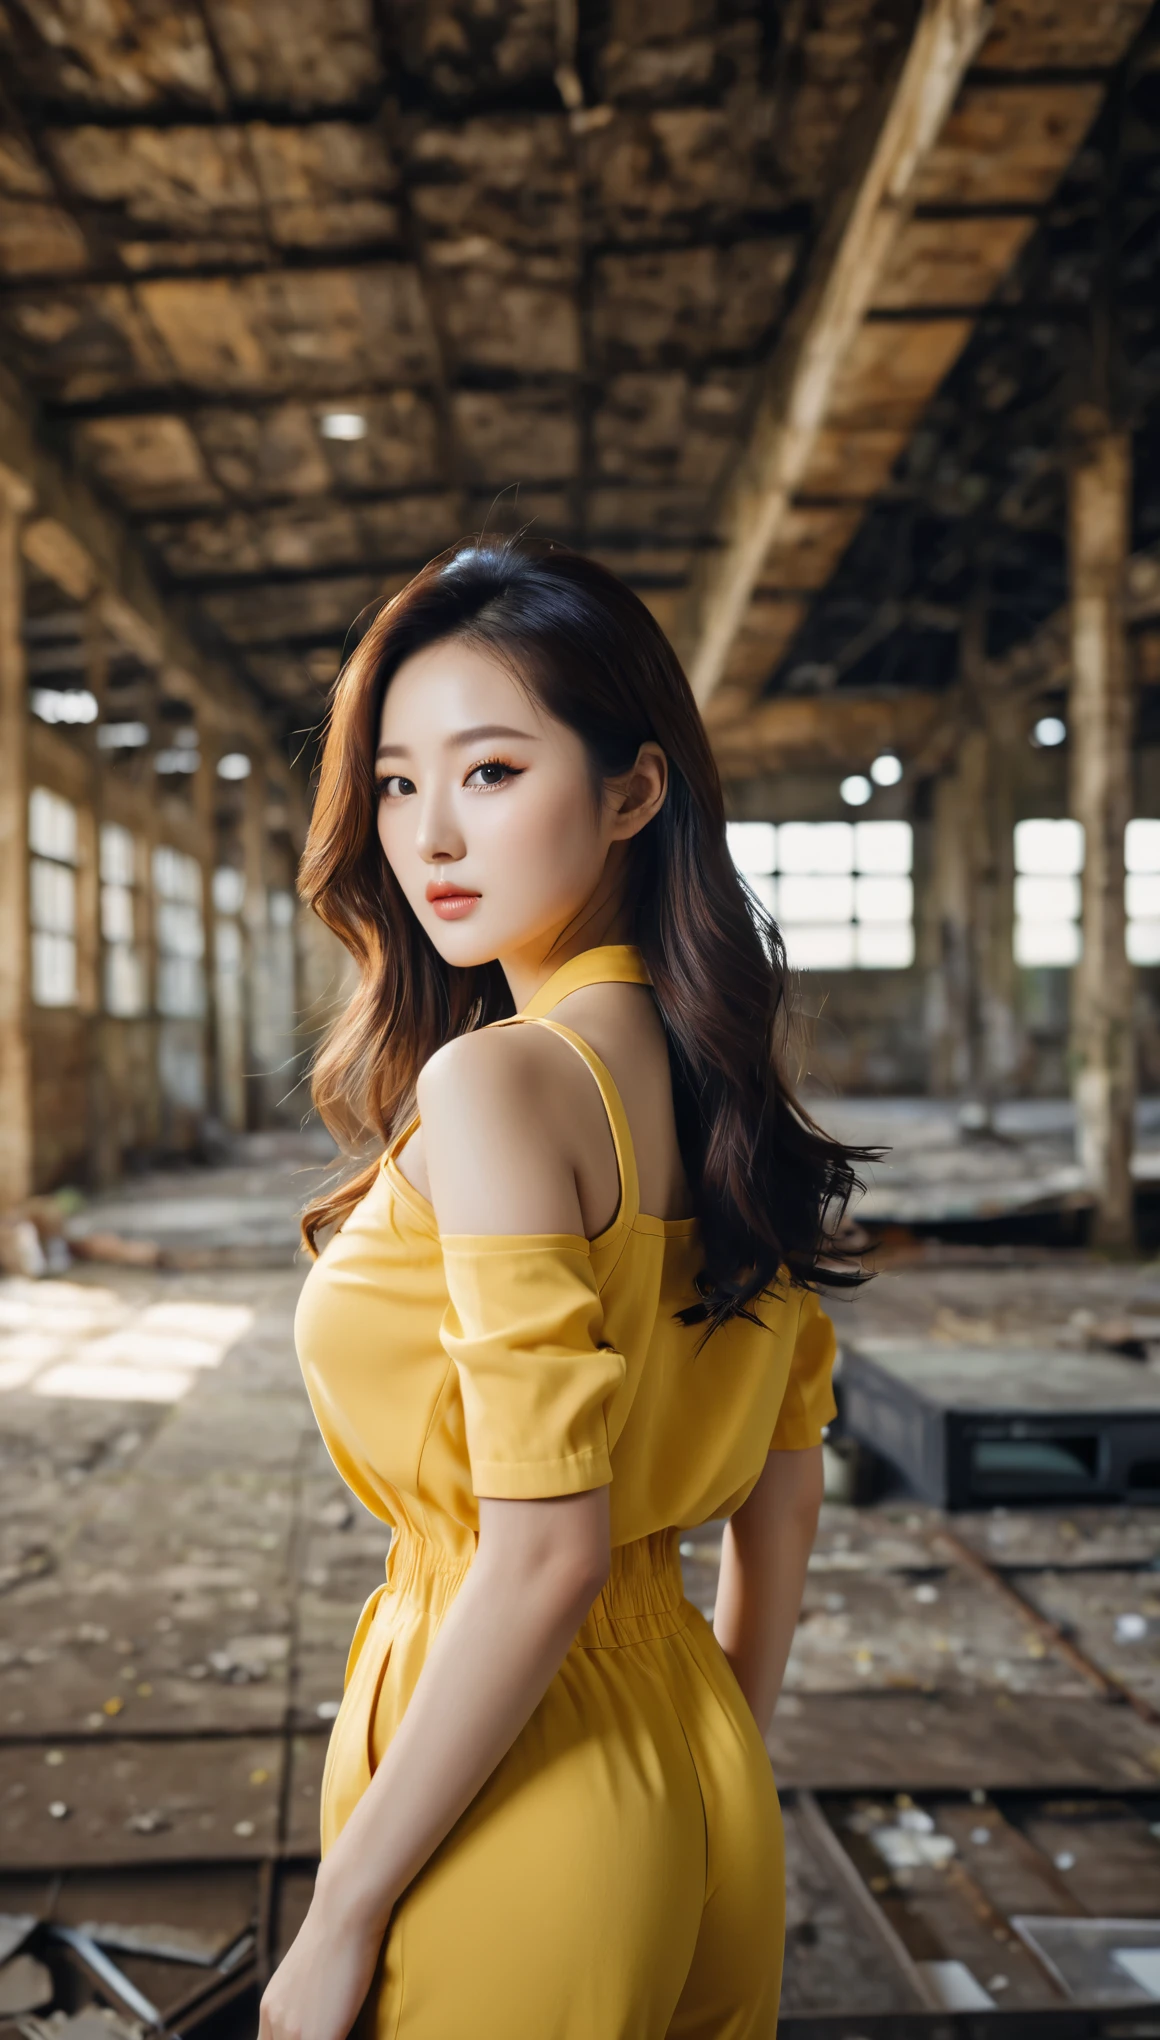 close-up da linda mulher coreana, Tamanho dos seios de 34 polegadas, vestindo macacão amarelo com acabamento preto, em armazém abandonado, fundo bokeh, foto polaroide, Ultra HD